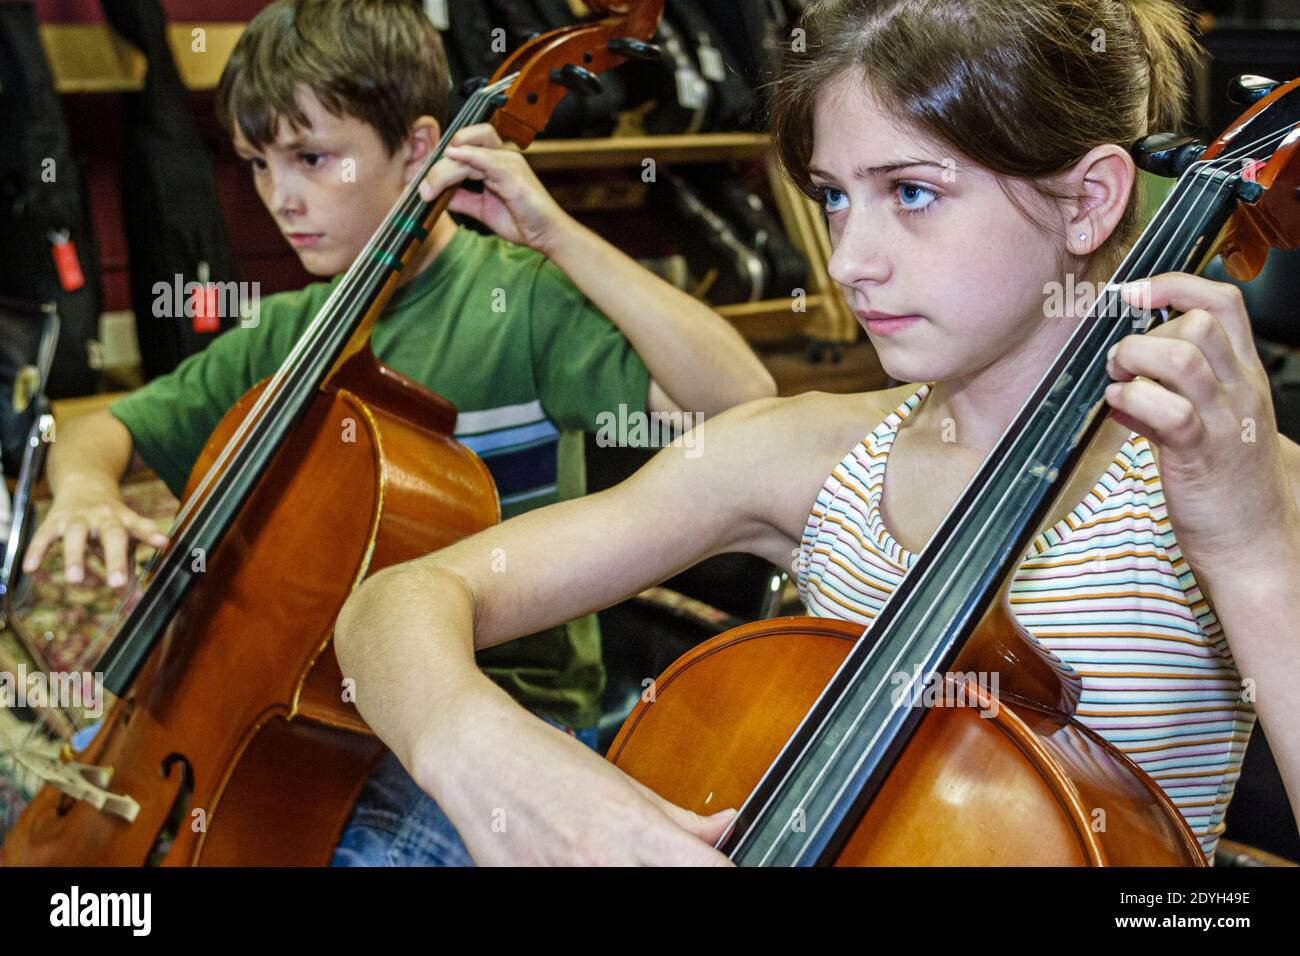 Alabama Gadsden Mary G. Hardin Centro para las Artes Culturales, interior estudiantes estudiantes estudiantes violonchelo campo de música de bajo práctica ensayo, niña niño tocando, Foto de stock